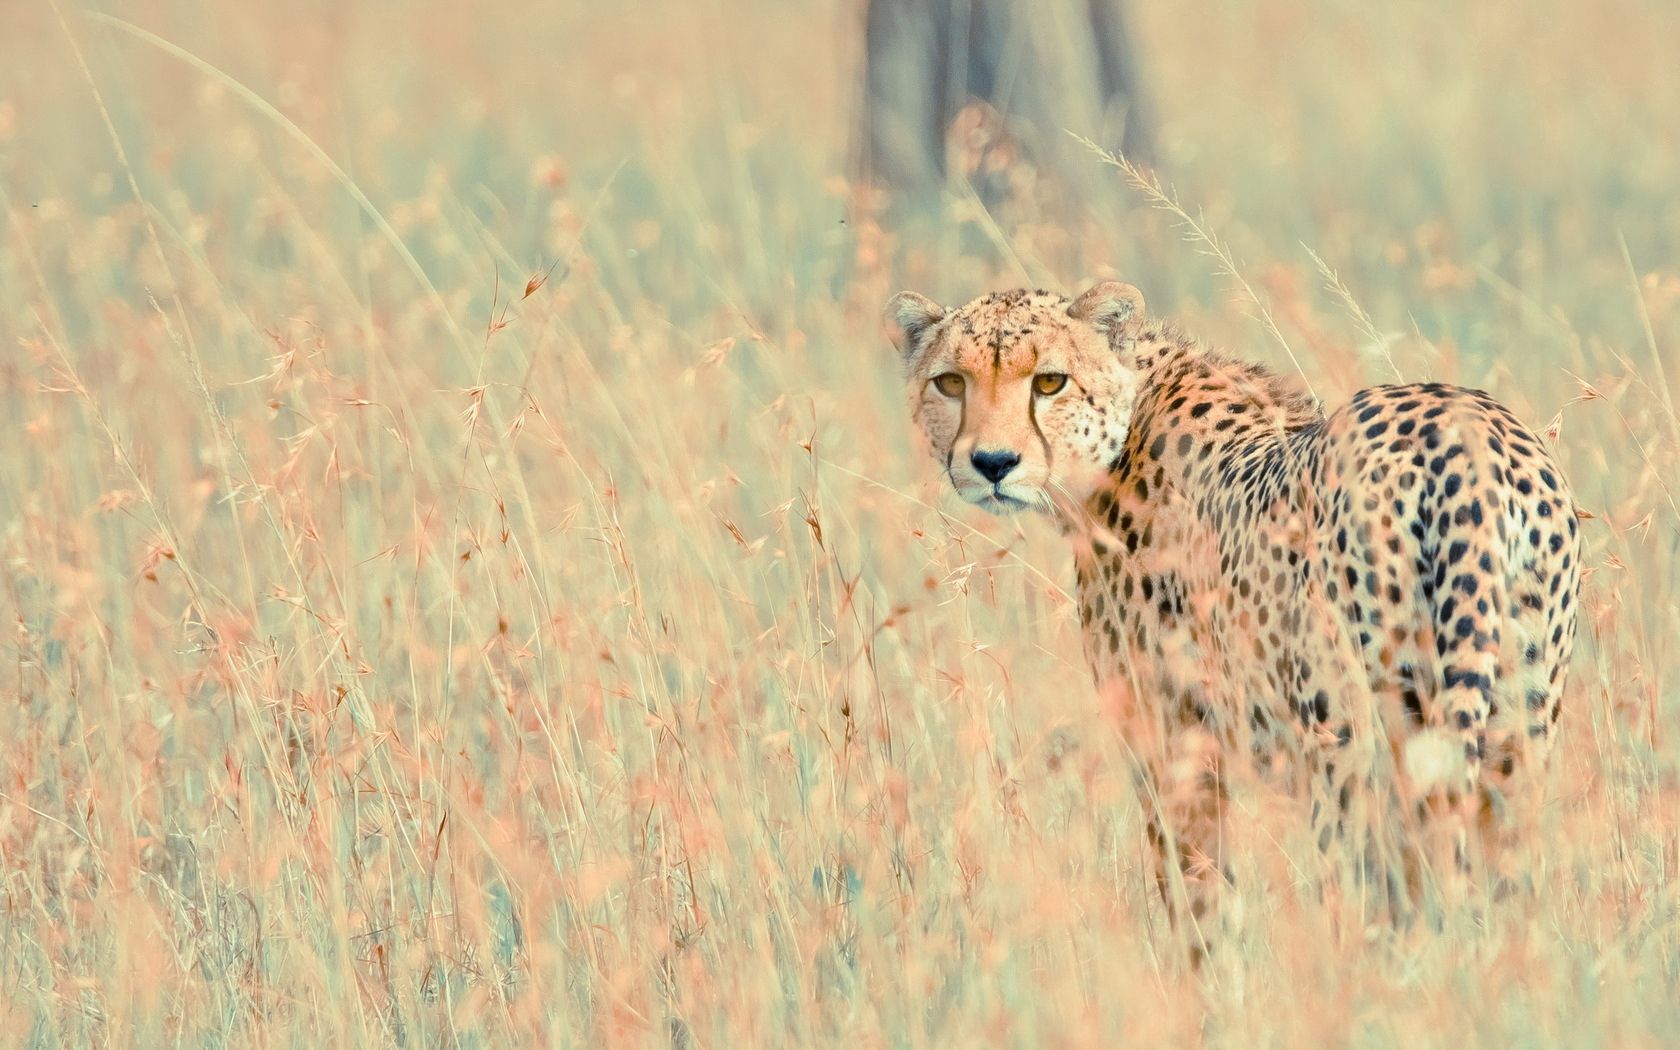 Descarga gratuita de fondo de pantalla para móvil de Animales, Naturaleza, Leopardo, Fondo.